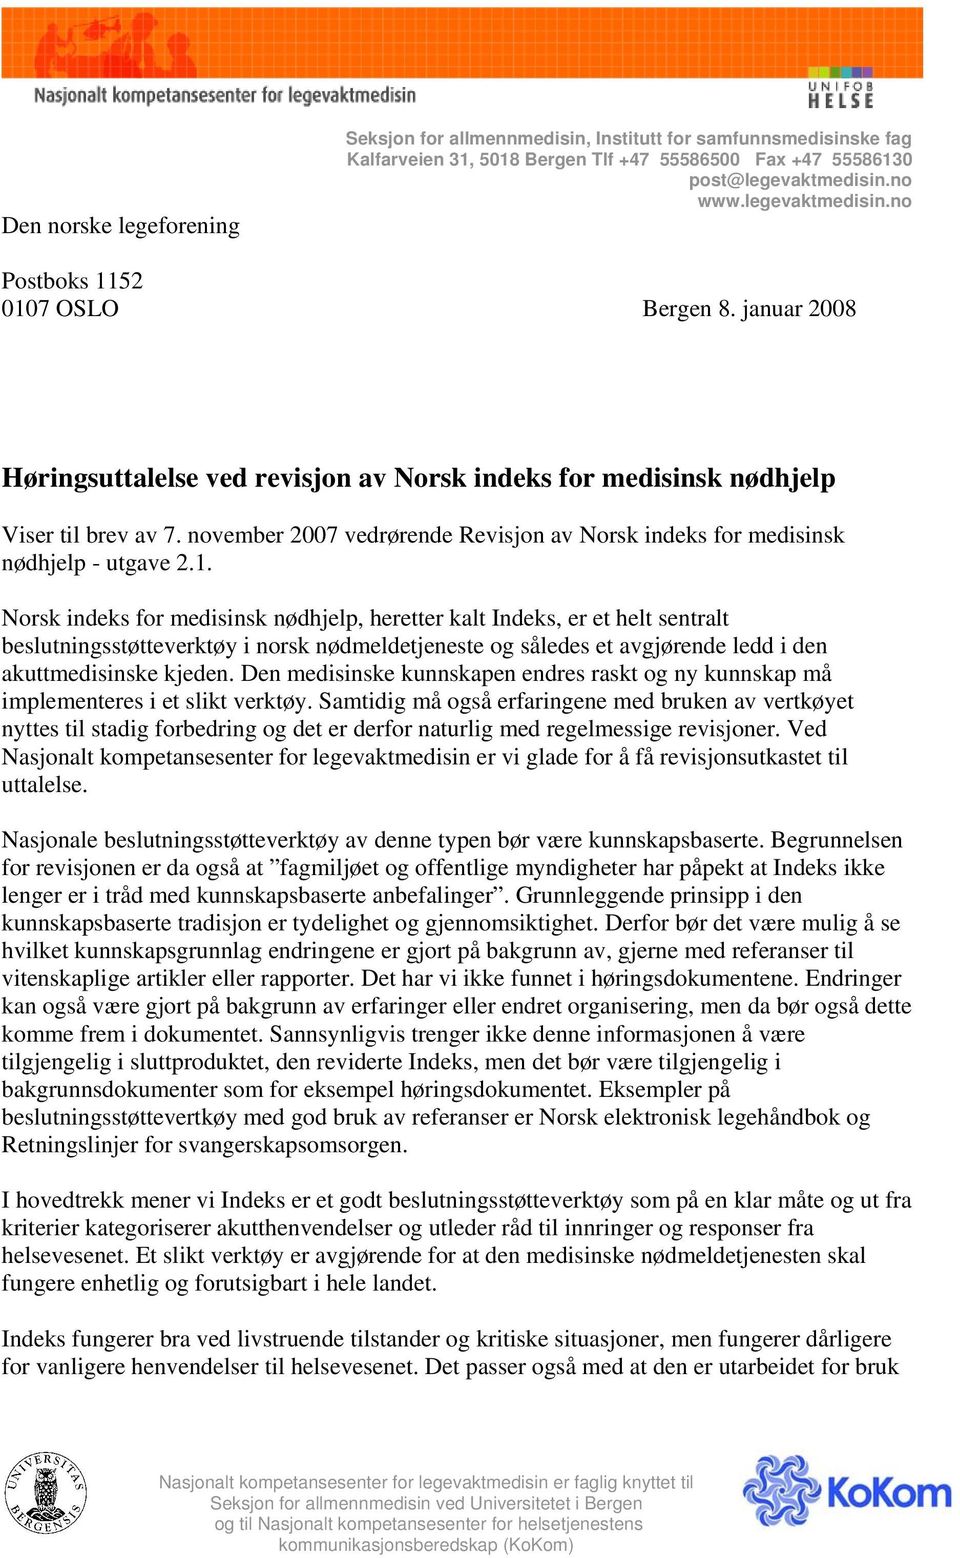 november 2007 vedrørende Revisjon av Norsk indeks for medisinsk nødhjelp - utgave 2.1.